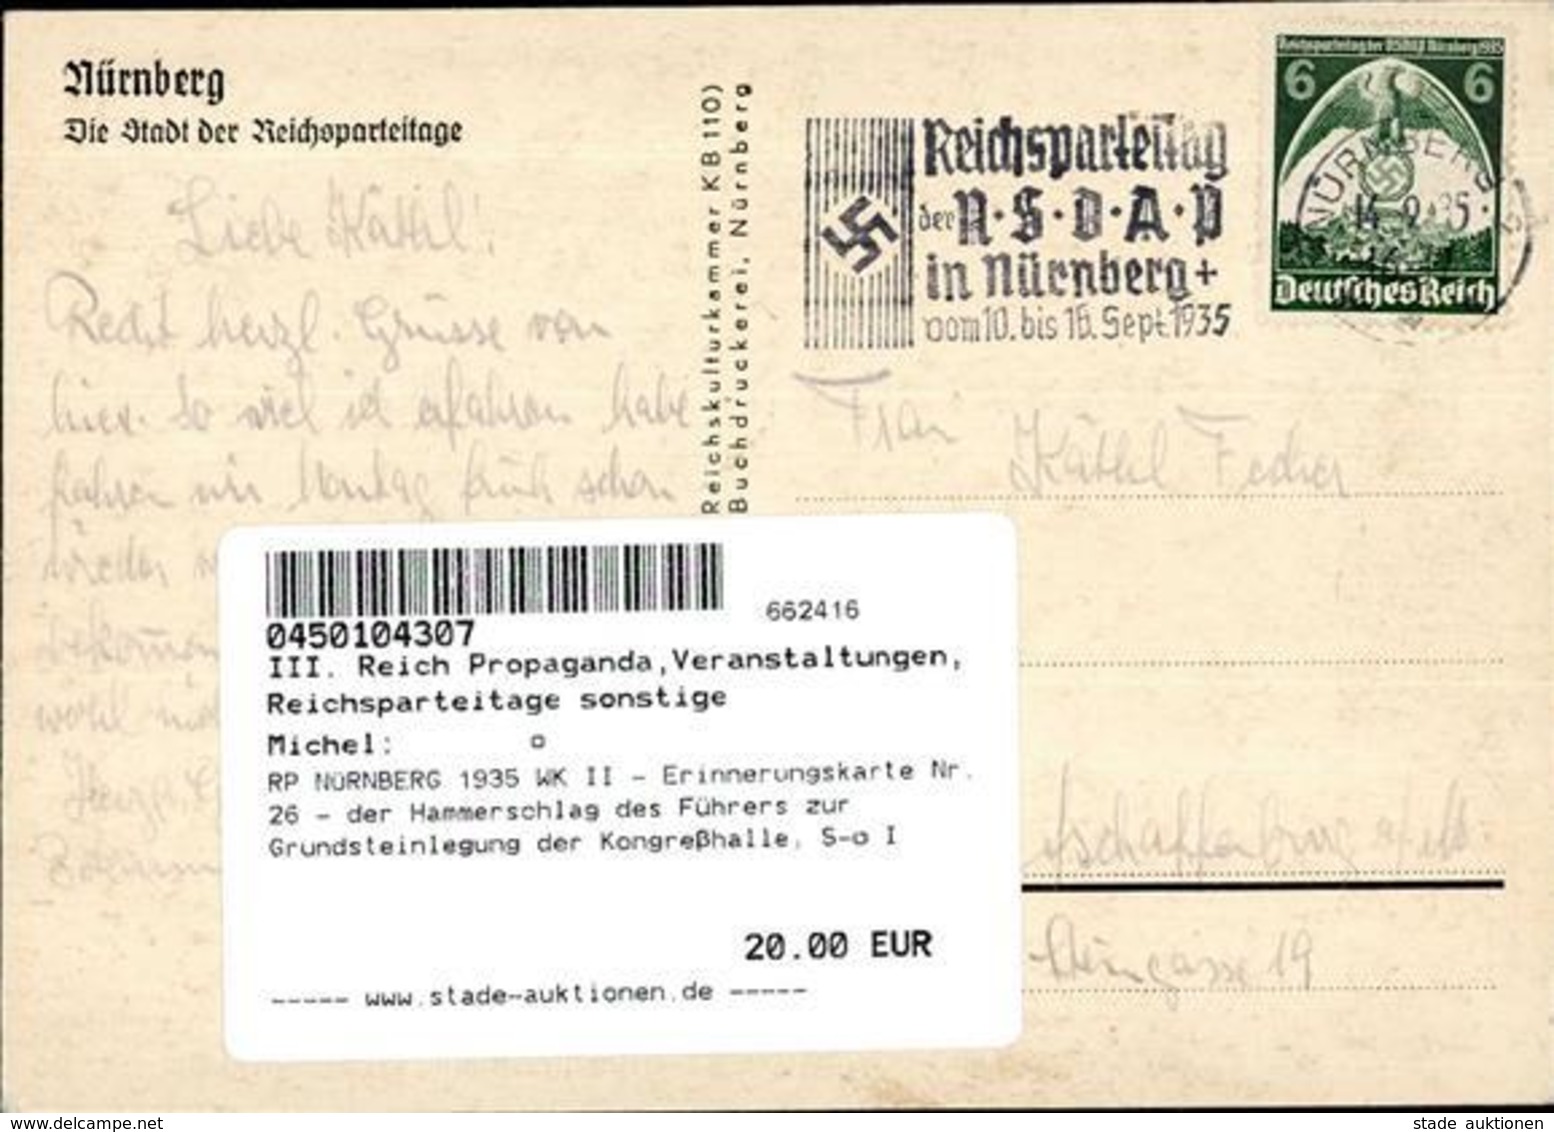 RP NÜRNBERG 1935 WK II - Erinnerungskarte Nr. 26 - Der Hammerschlag Des Führers Zur Grundsteinlegung Der Kongreßhalle, S - War 1939-45